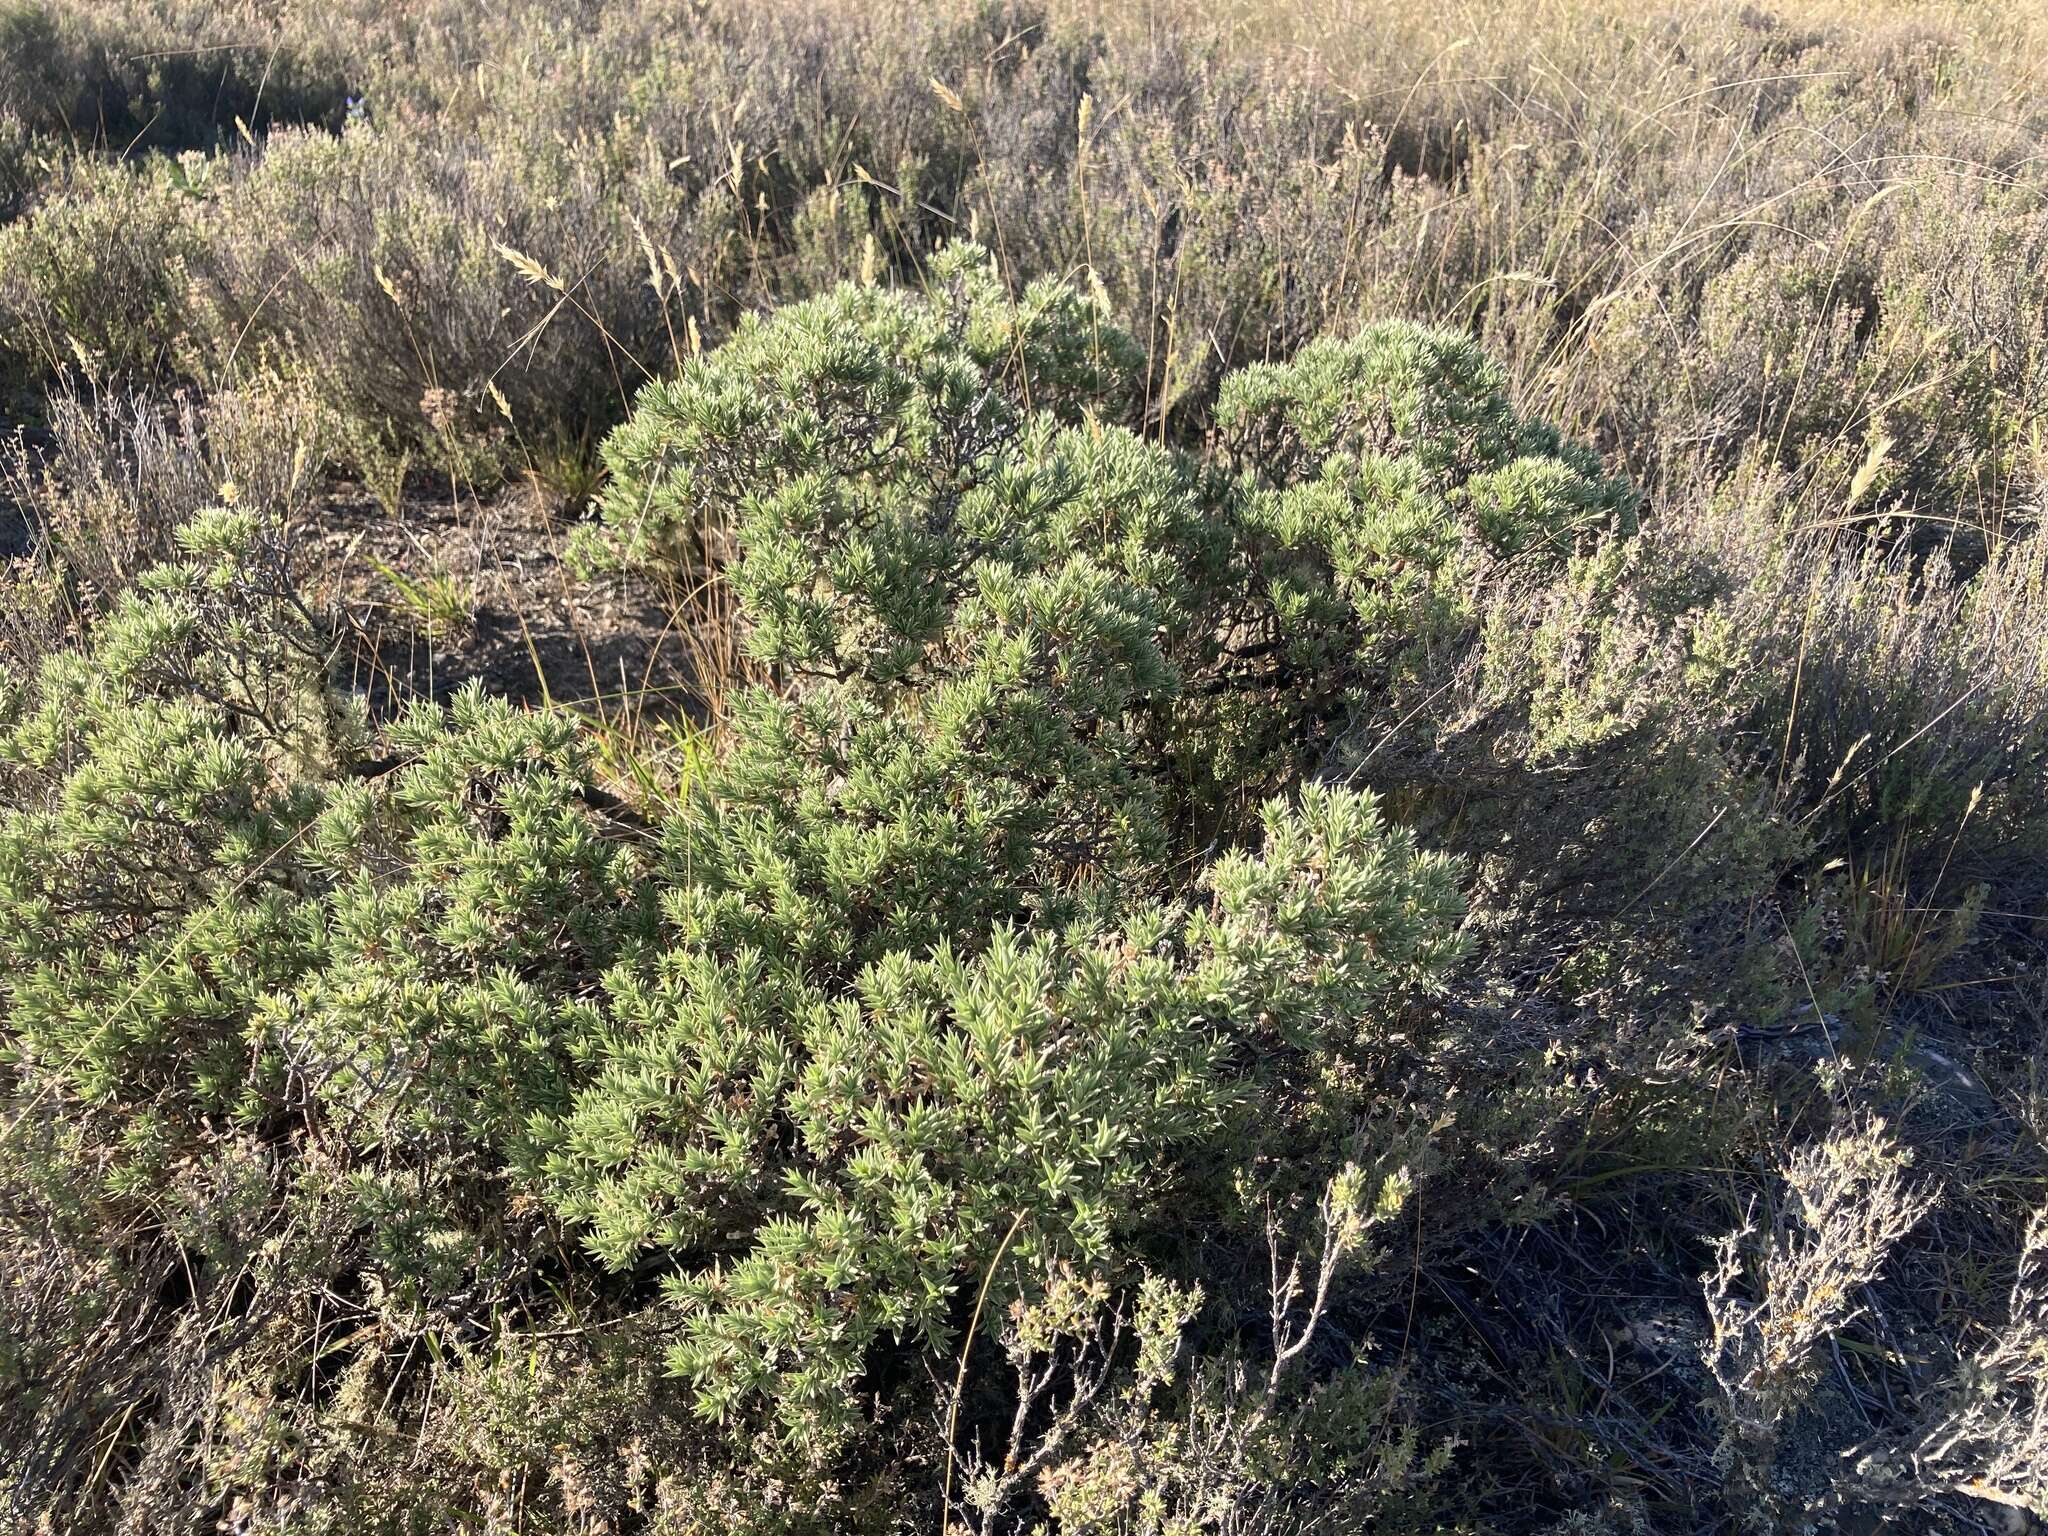 Image of Pimelea aridula subsp. aridula